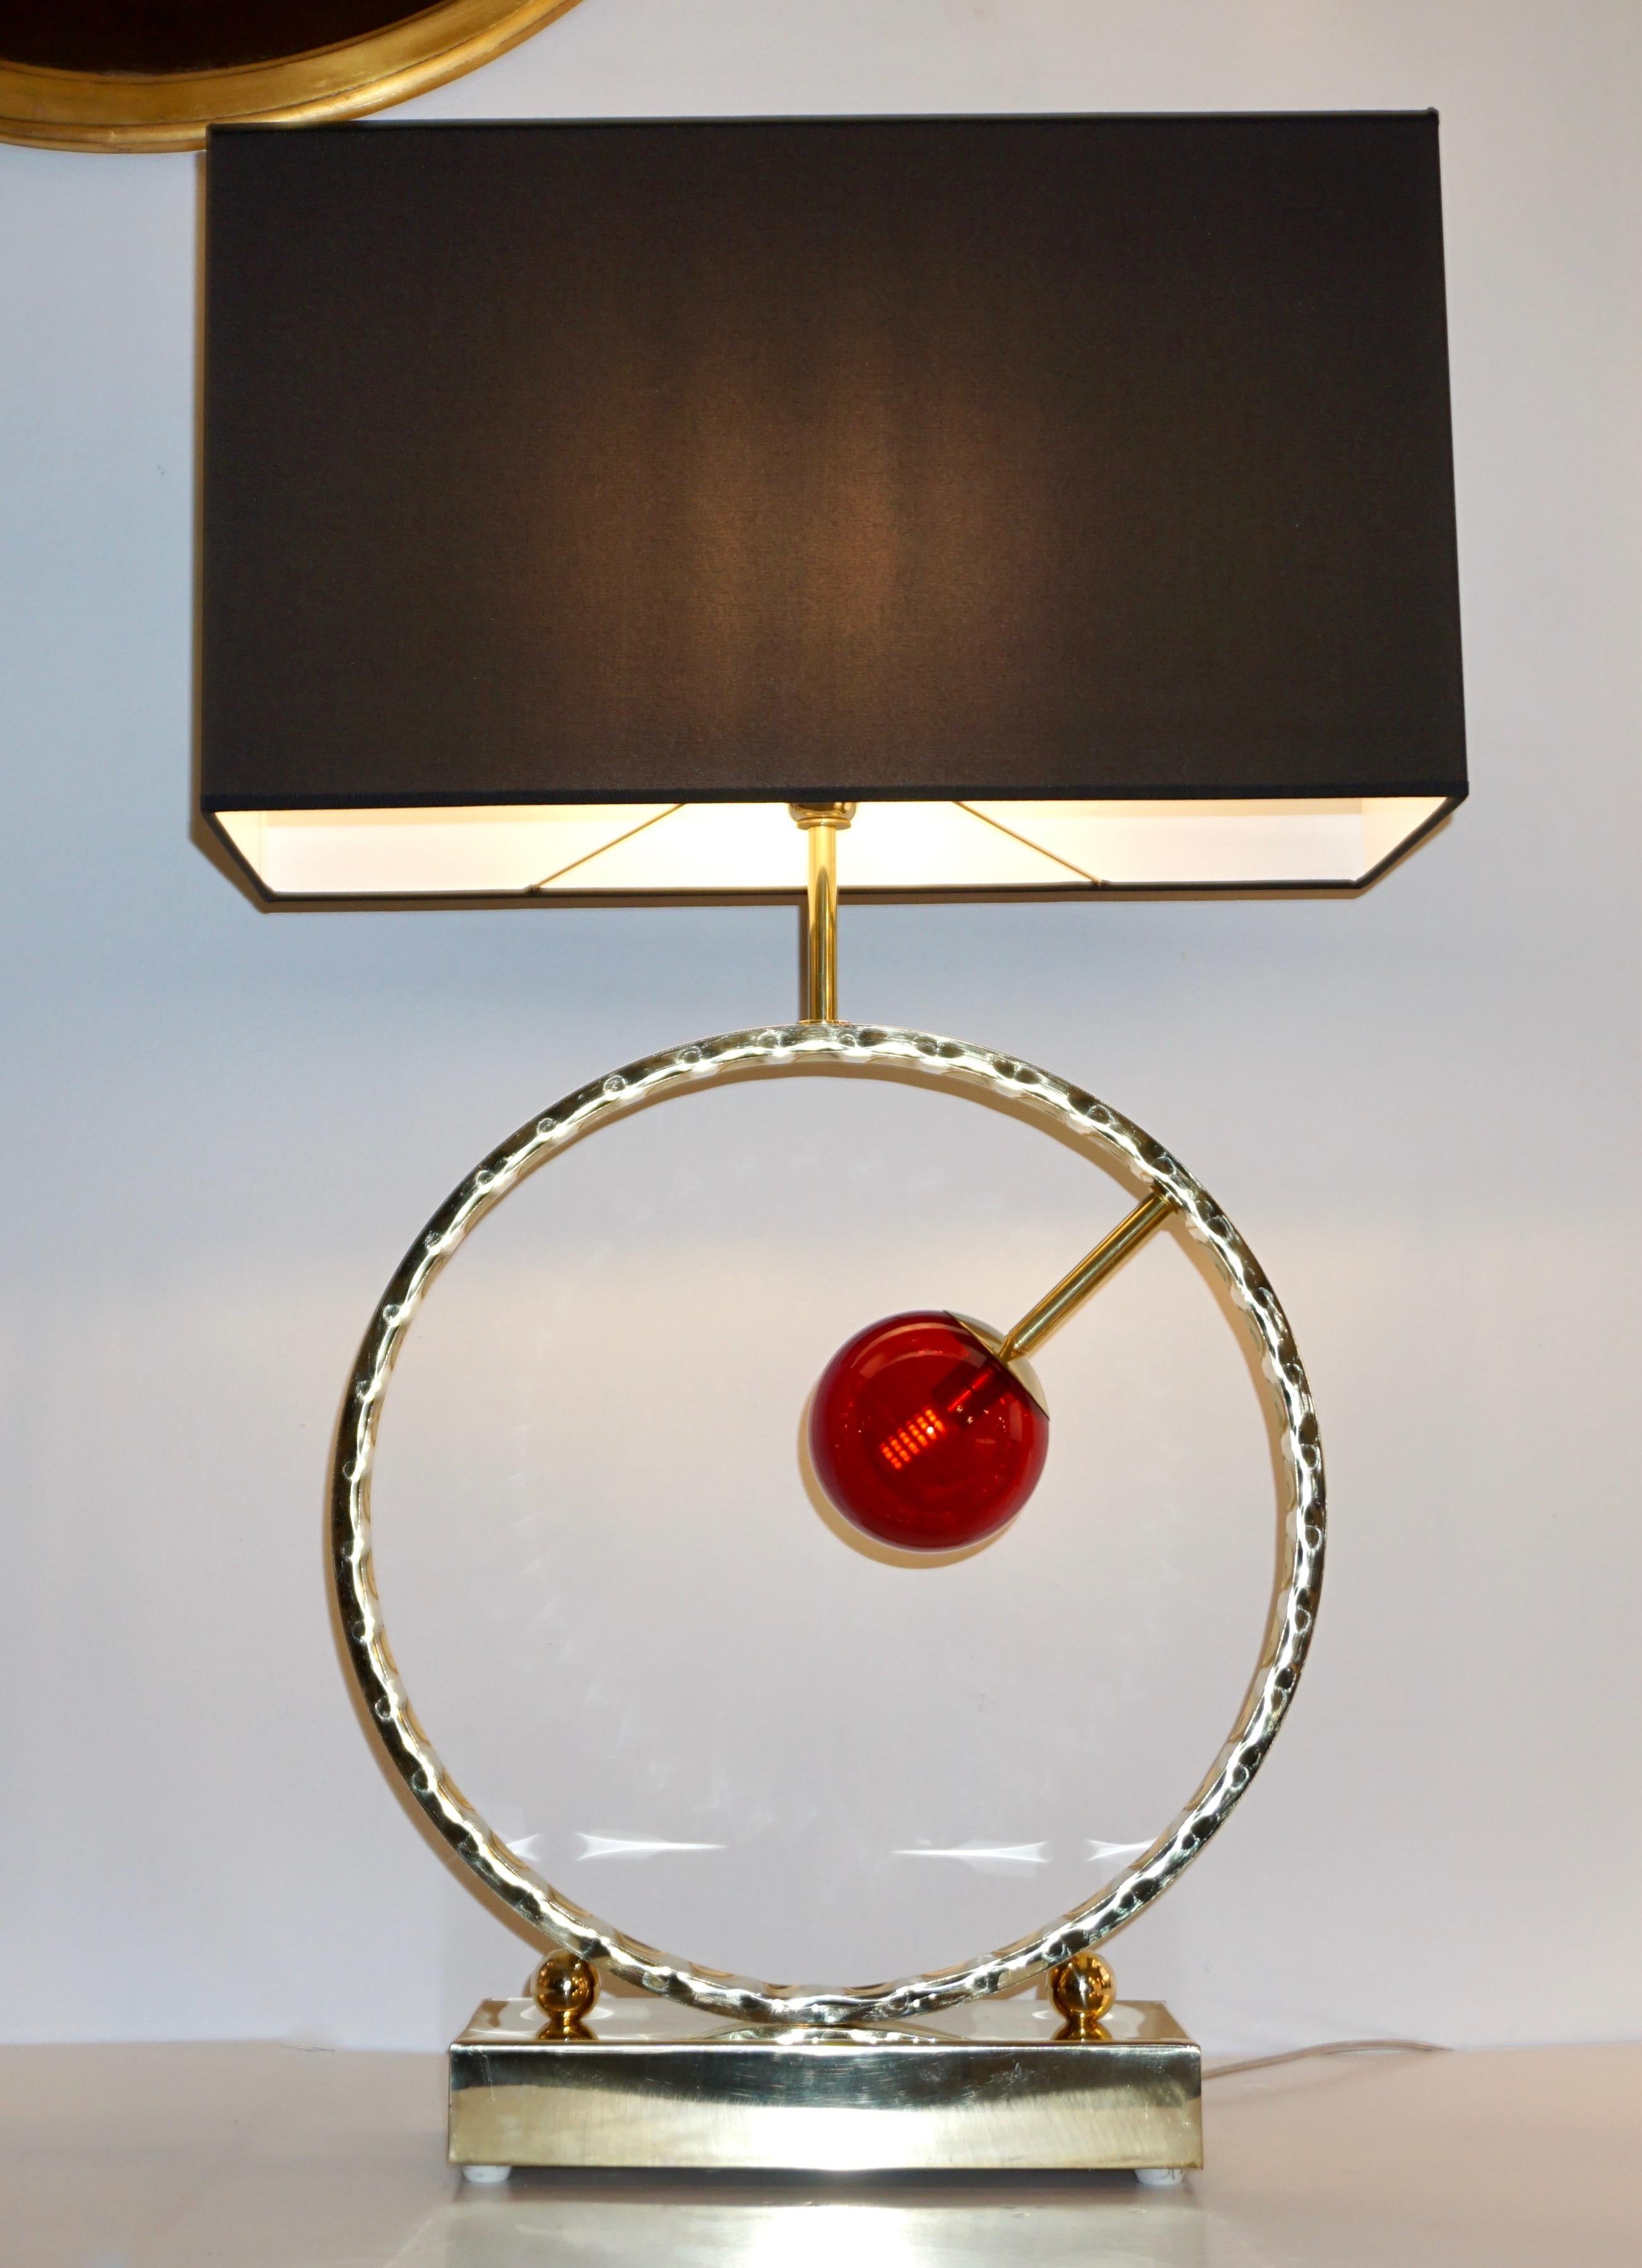 Ein Paar hochdekorative, große Tischlampen, vollständig in Italien handgefertigt, mit einem verlockenden geometrischen Design. Der Körper besteht aus einem offenen Kreis aus handgehämmertem Messing, der auf einer Seite eine Kugel aus rotem